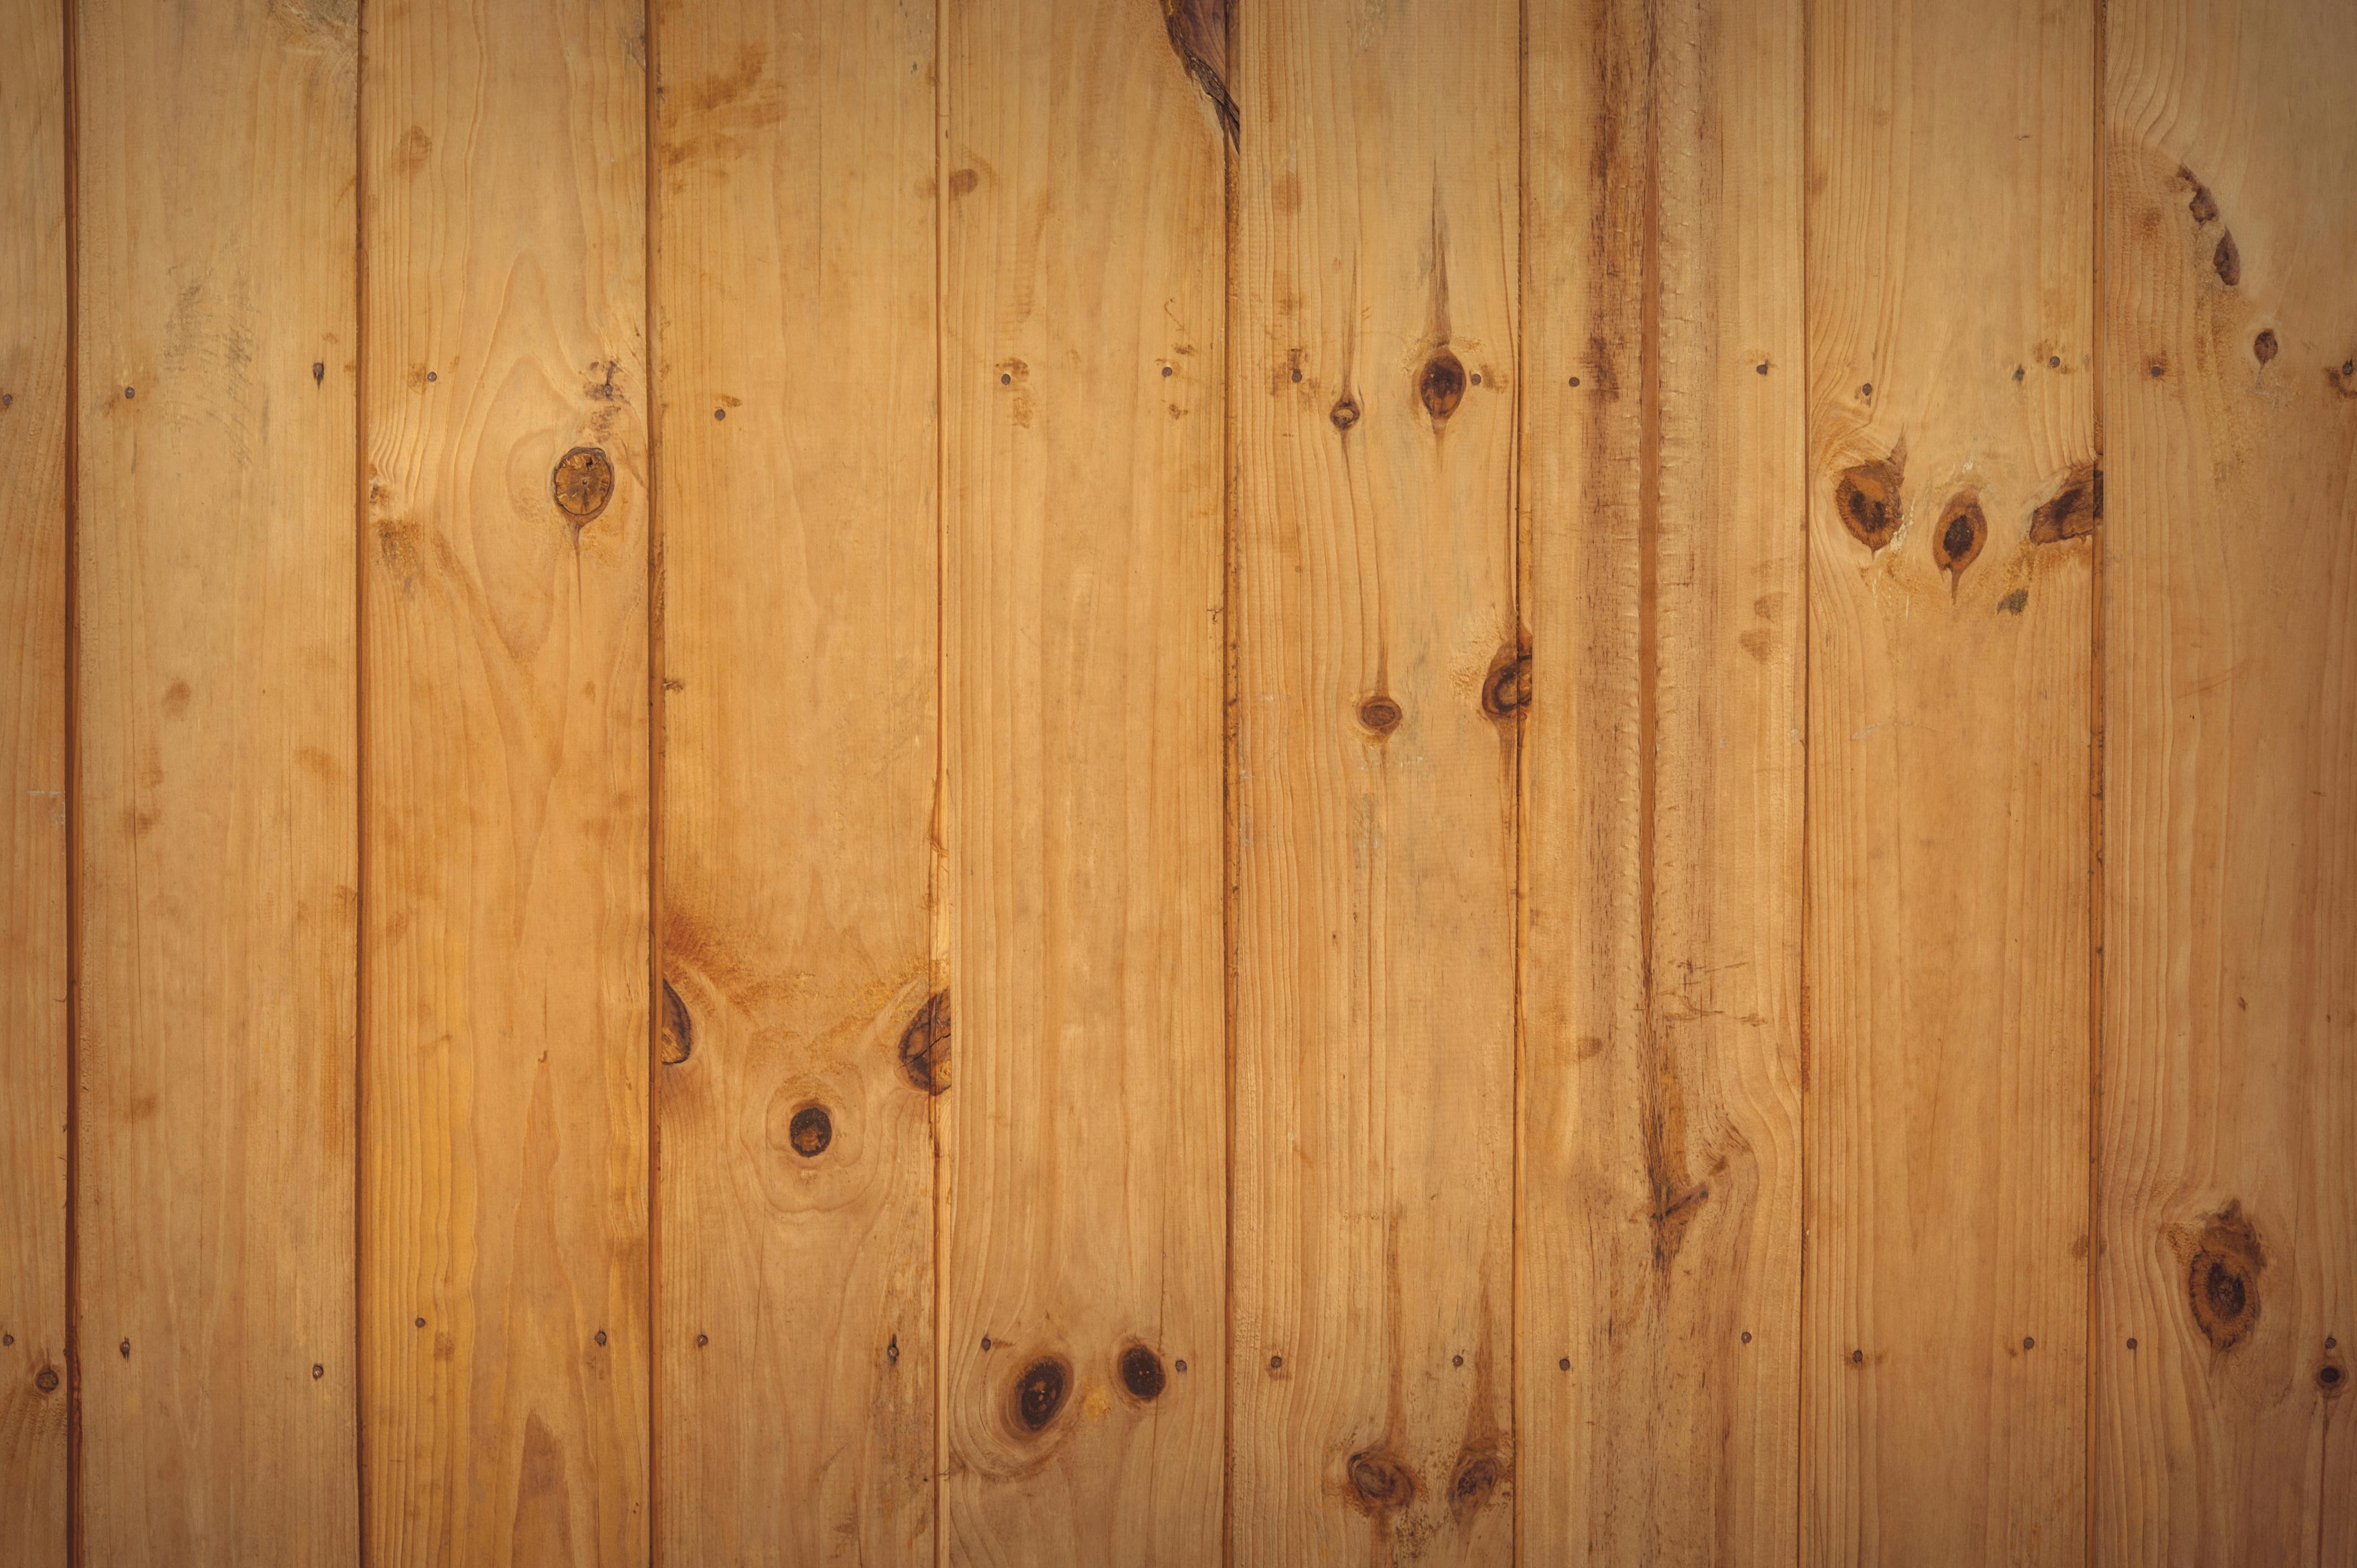 Brown Wooden Floor · Free Stock Photo